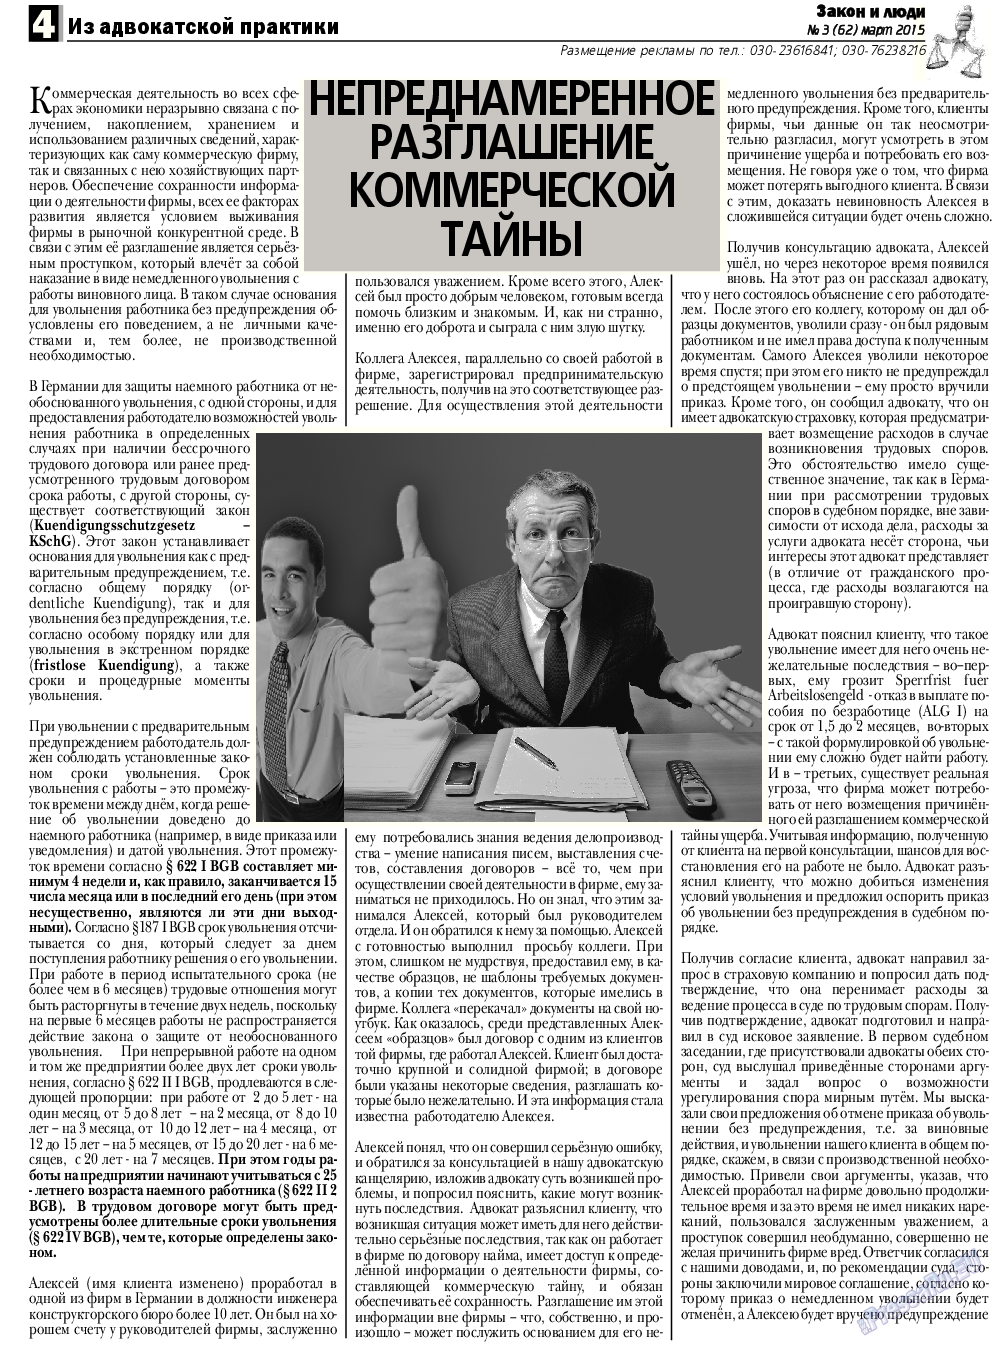 Закон и люди, газета. 2015 №3 стр.4